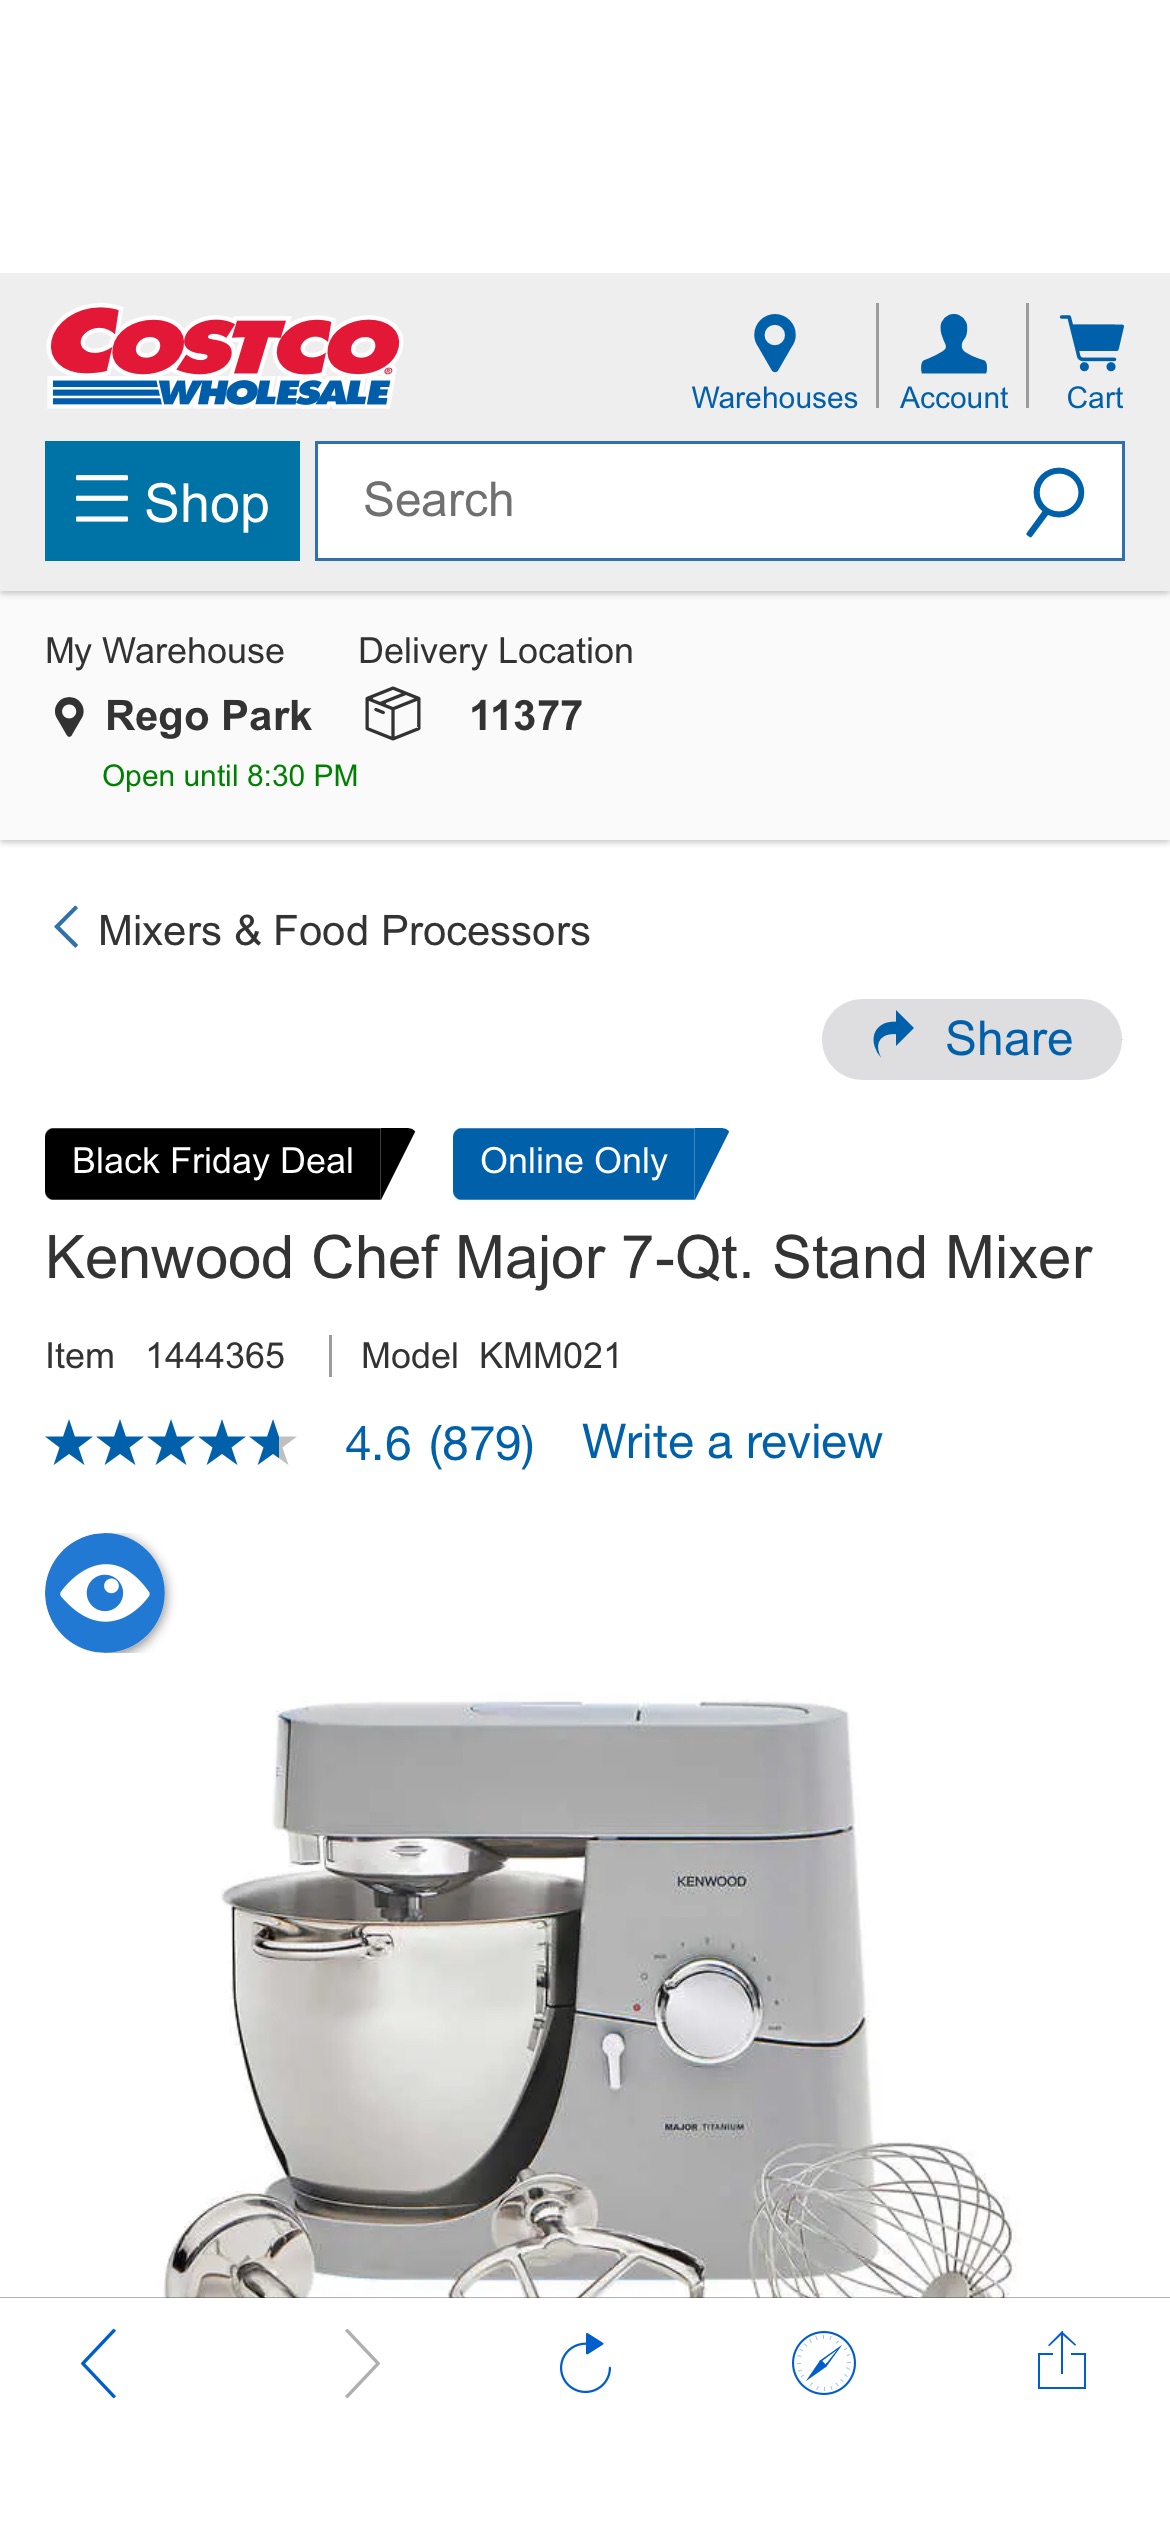 Kenwood Chef Major 7-Qt. Stand Mixer | Costco